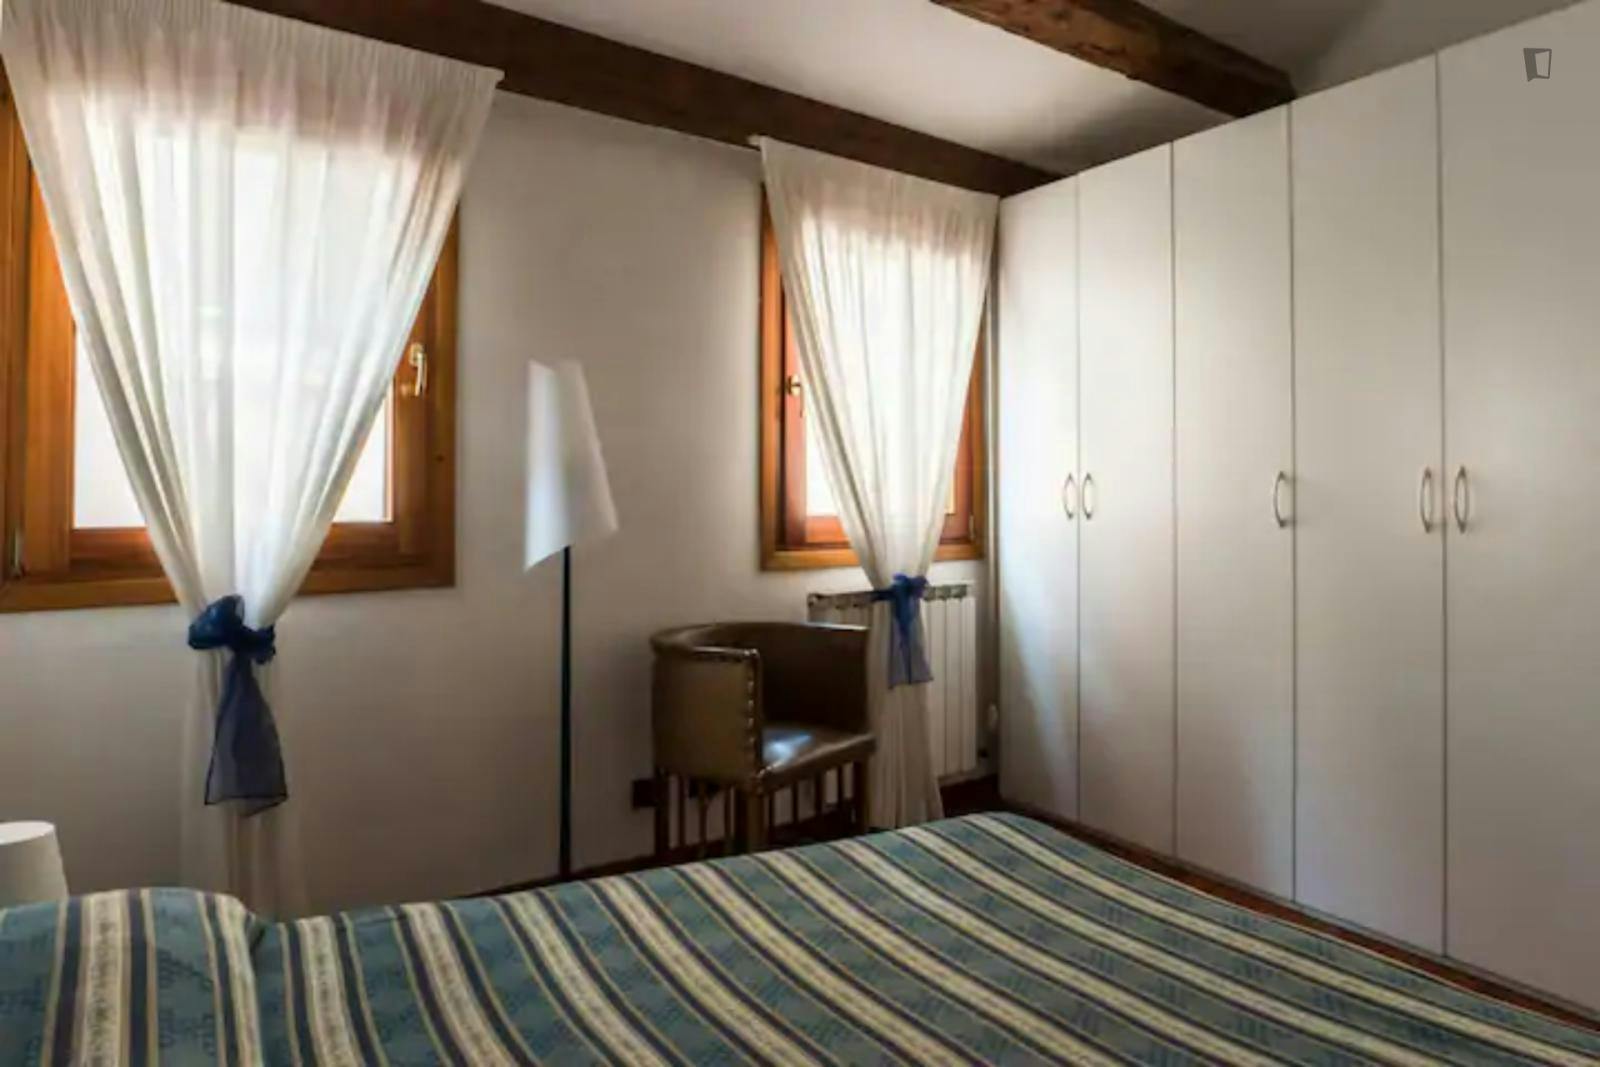 Cozy 1-bedroom apartment near Chiesa di San Francesco della Vigna